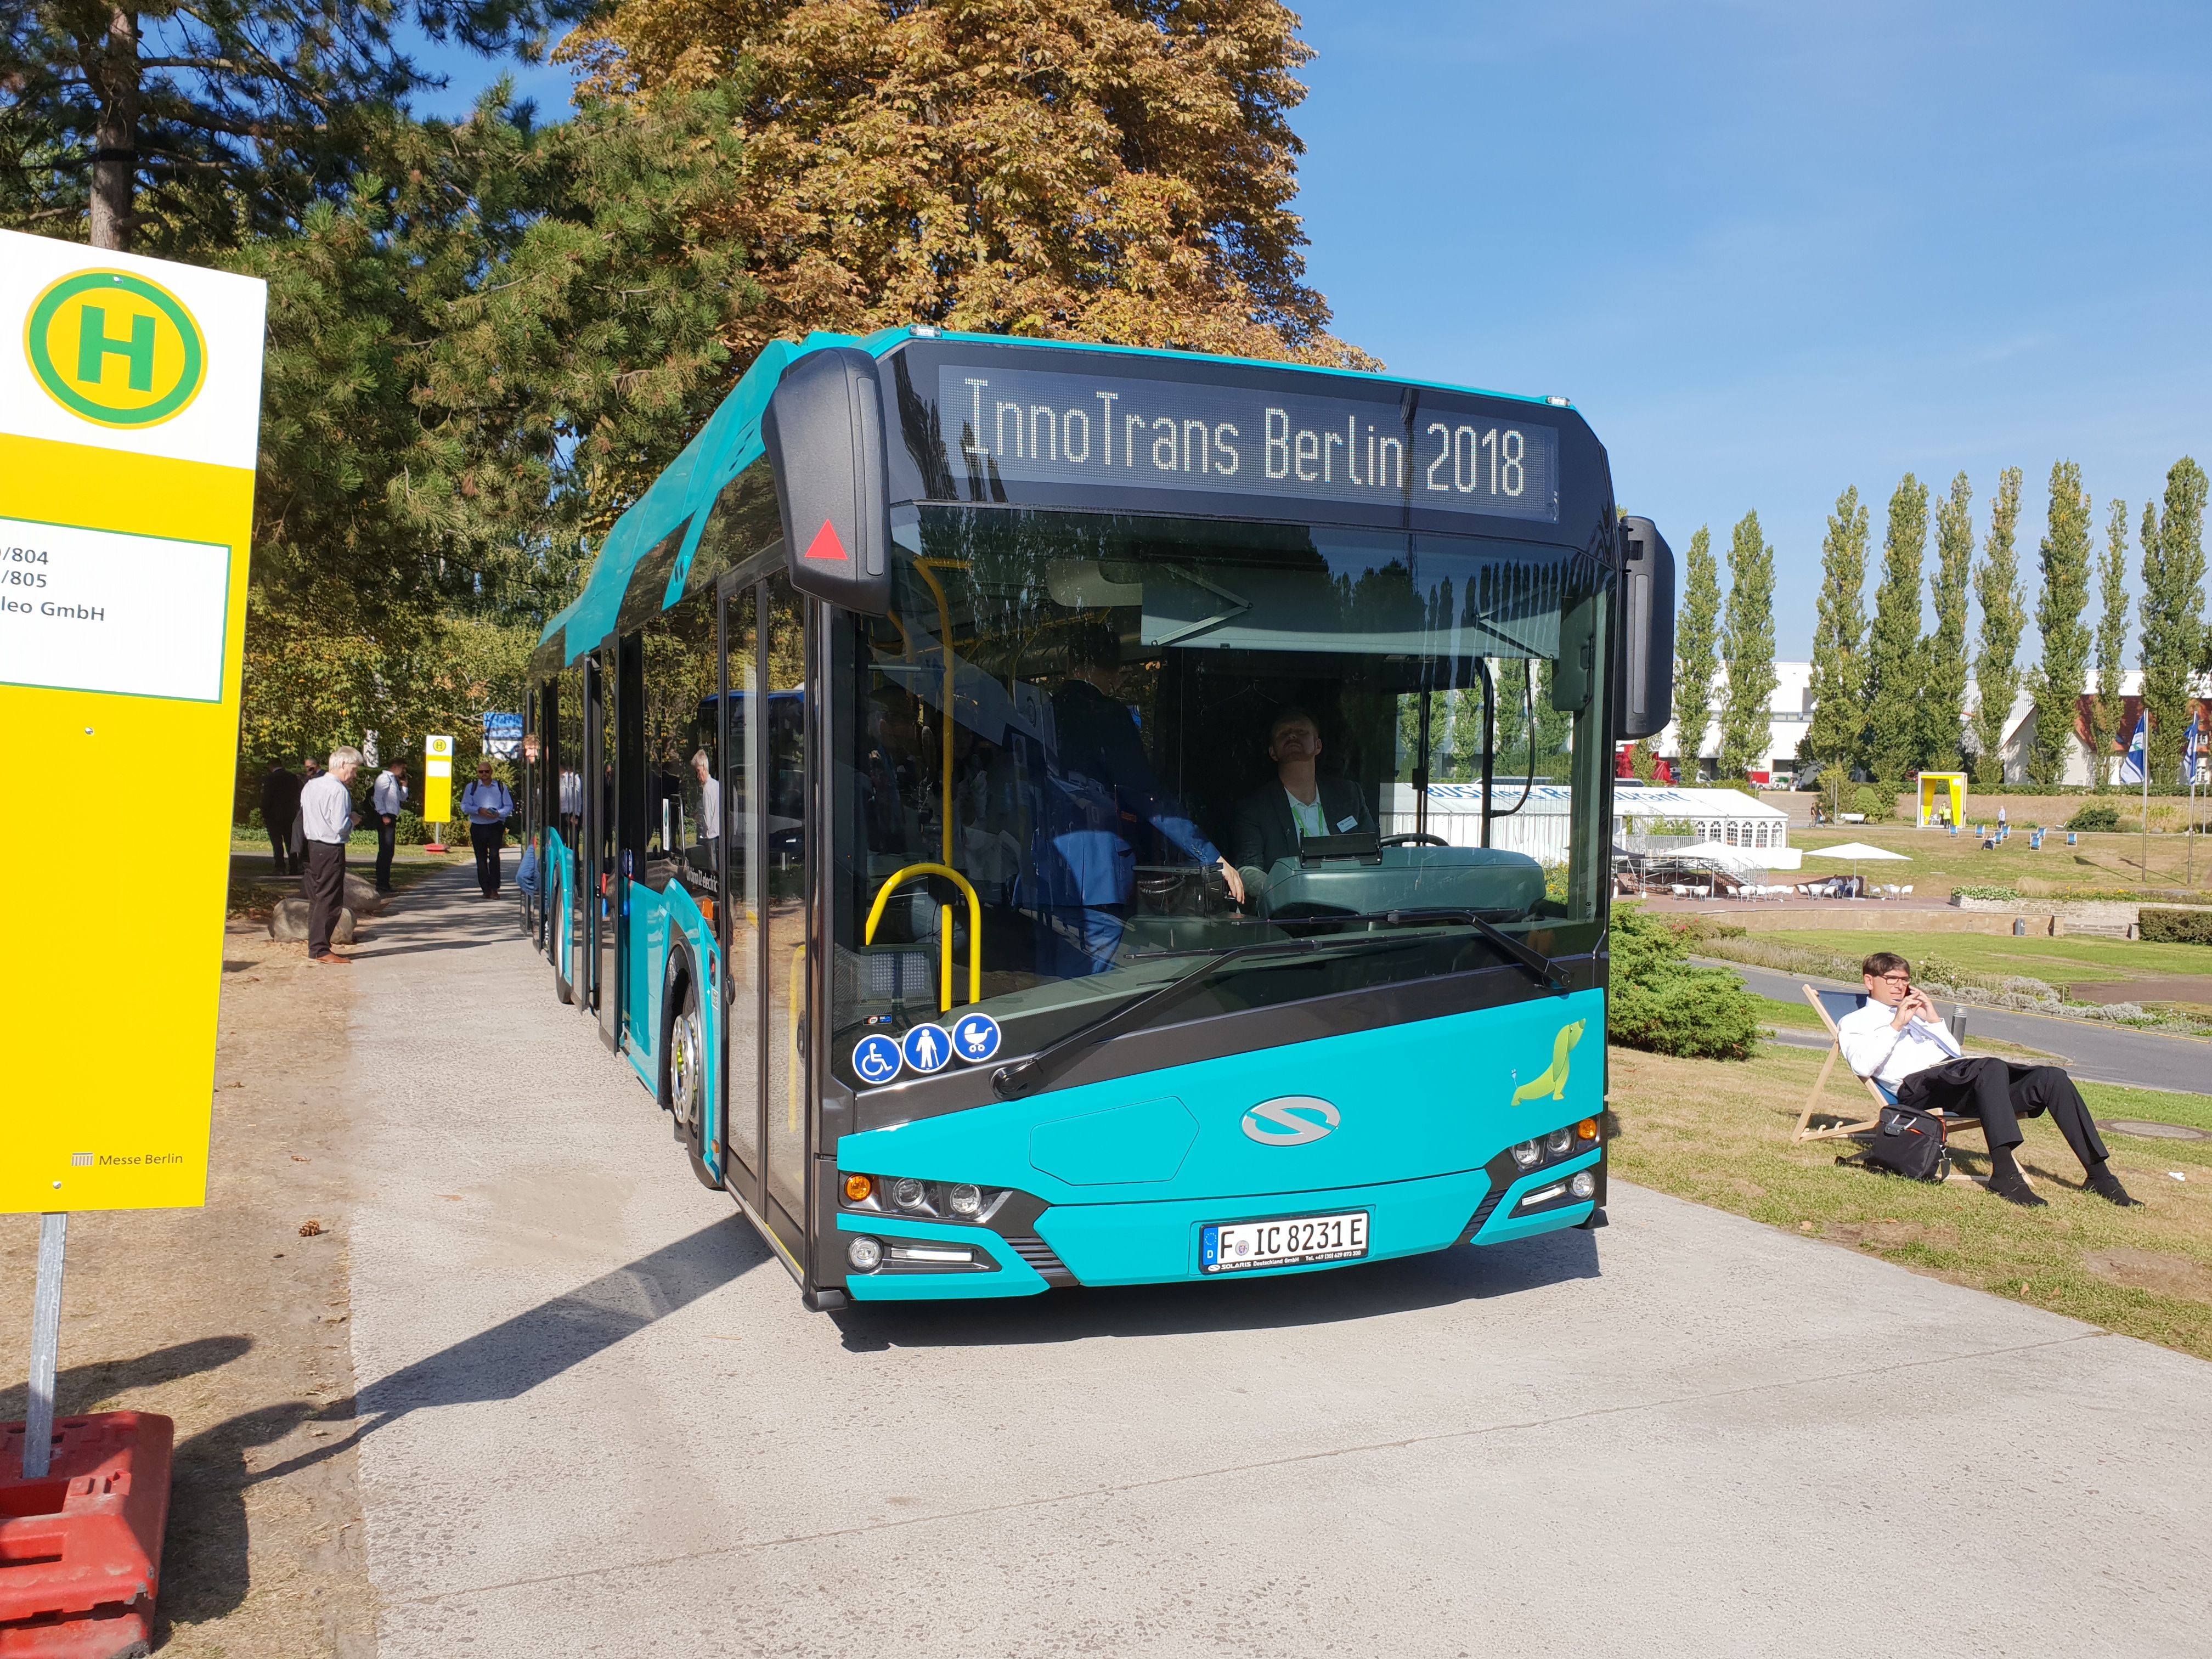 Foto: Elektrobus von Solaris auf der Berliner Innotrans 2018